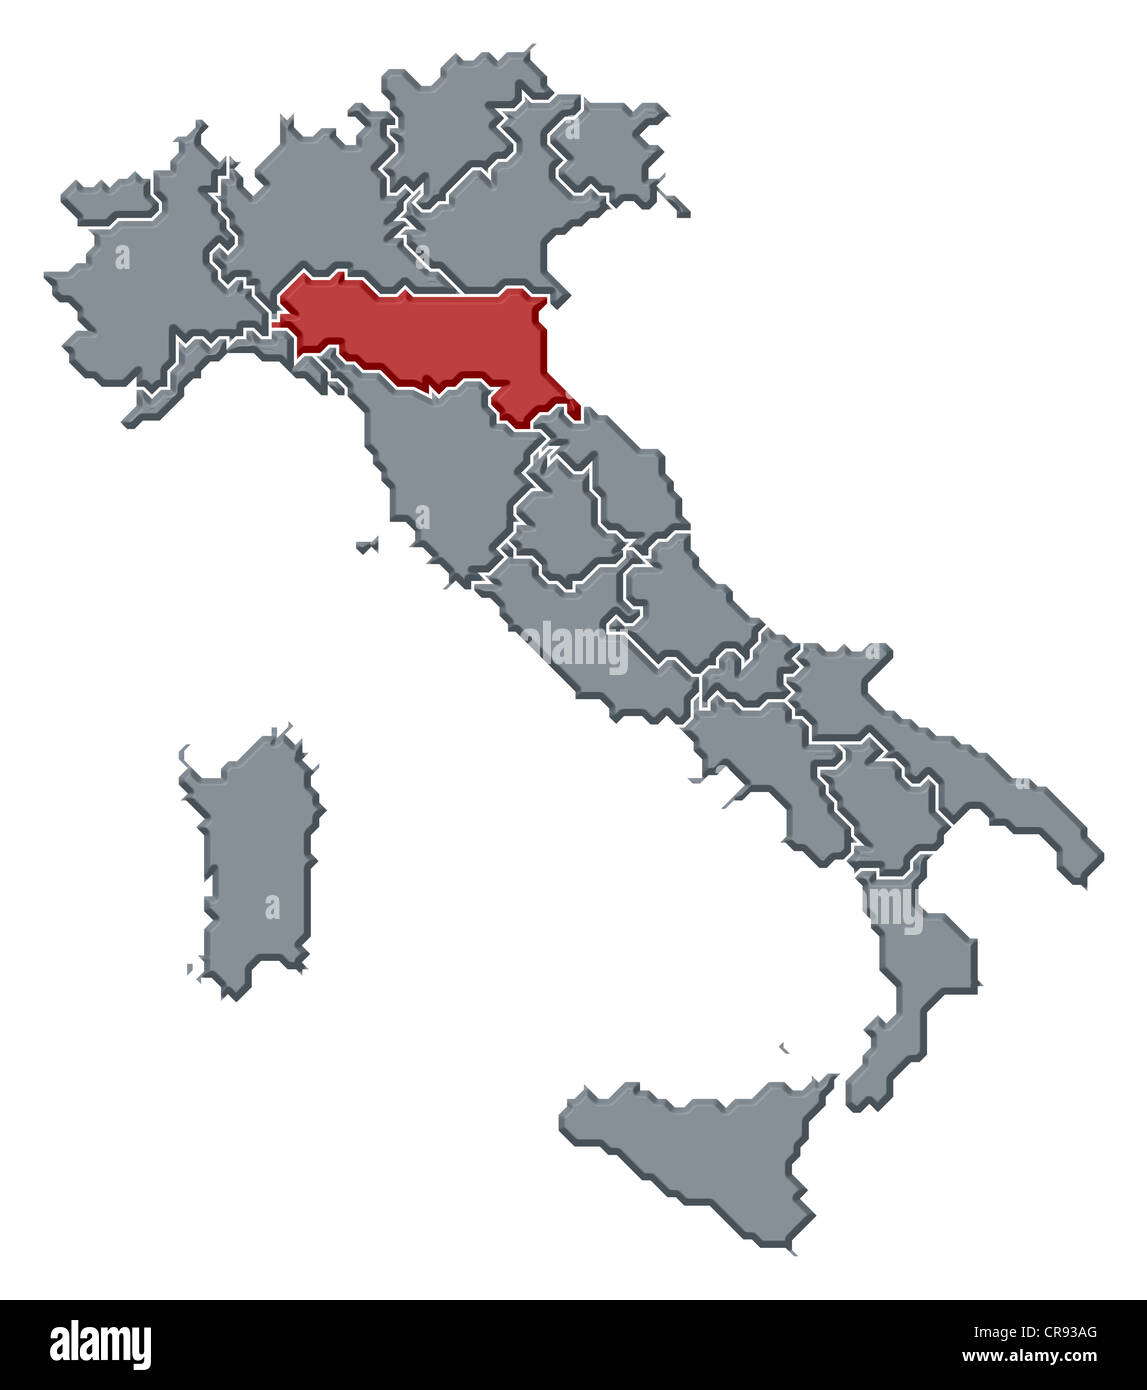 Mappa politica dell Italia con le diverse regioni in cui la Regione Emilia Romagna è evidenziata. Foto Stock